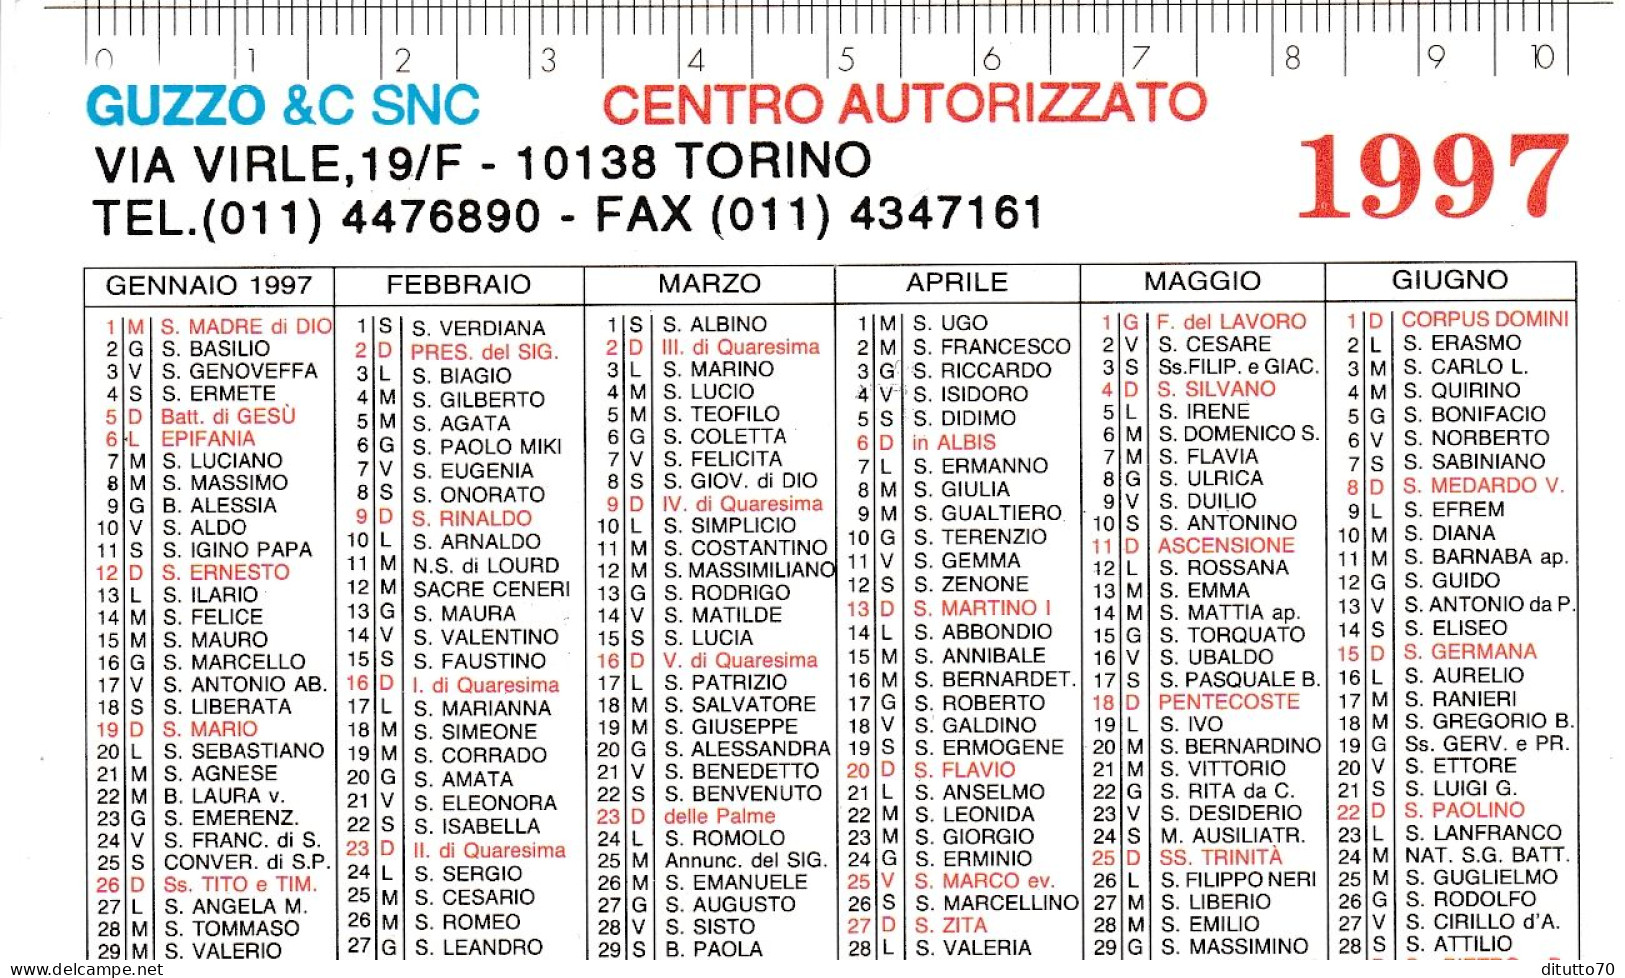 Calendarietto - Guzzo E Csnc - Torino - Anno 1997 - Small : 1991-00